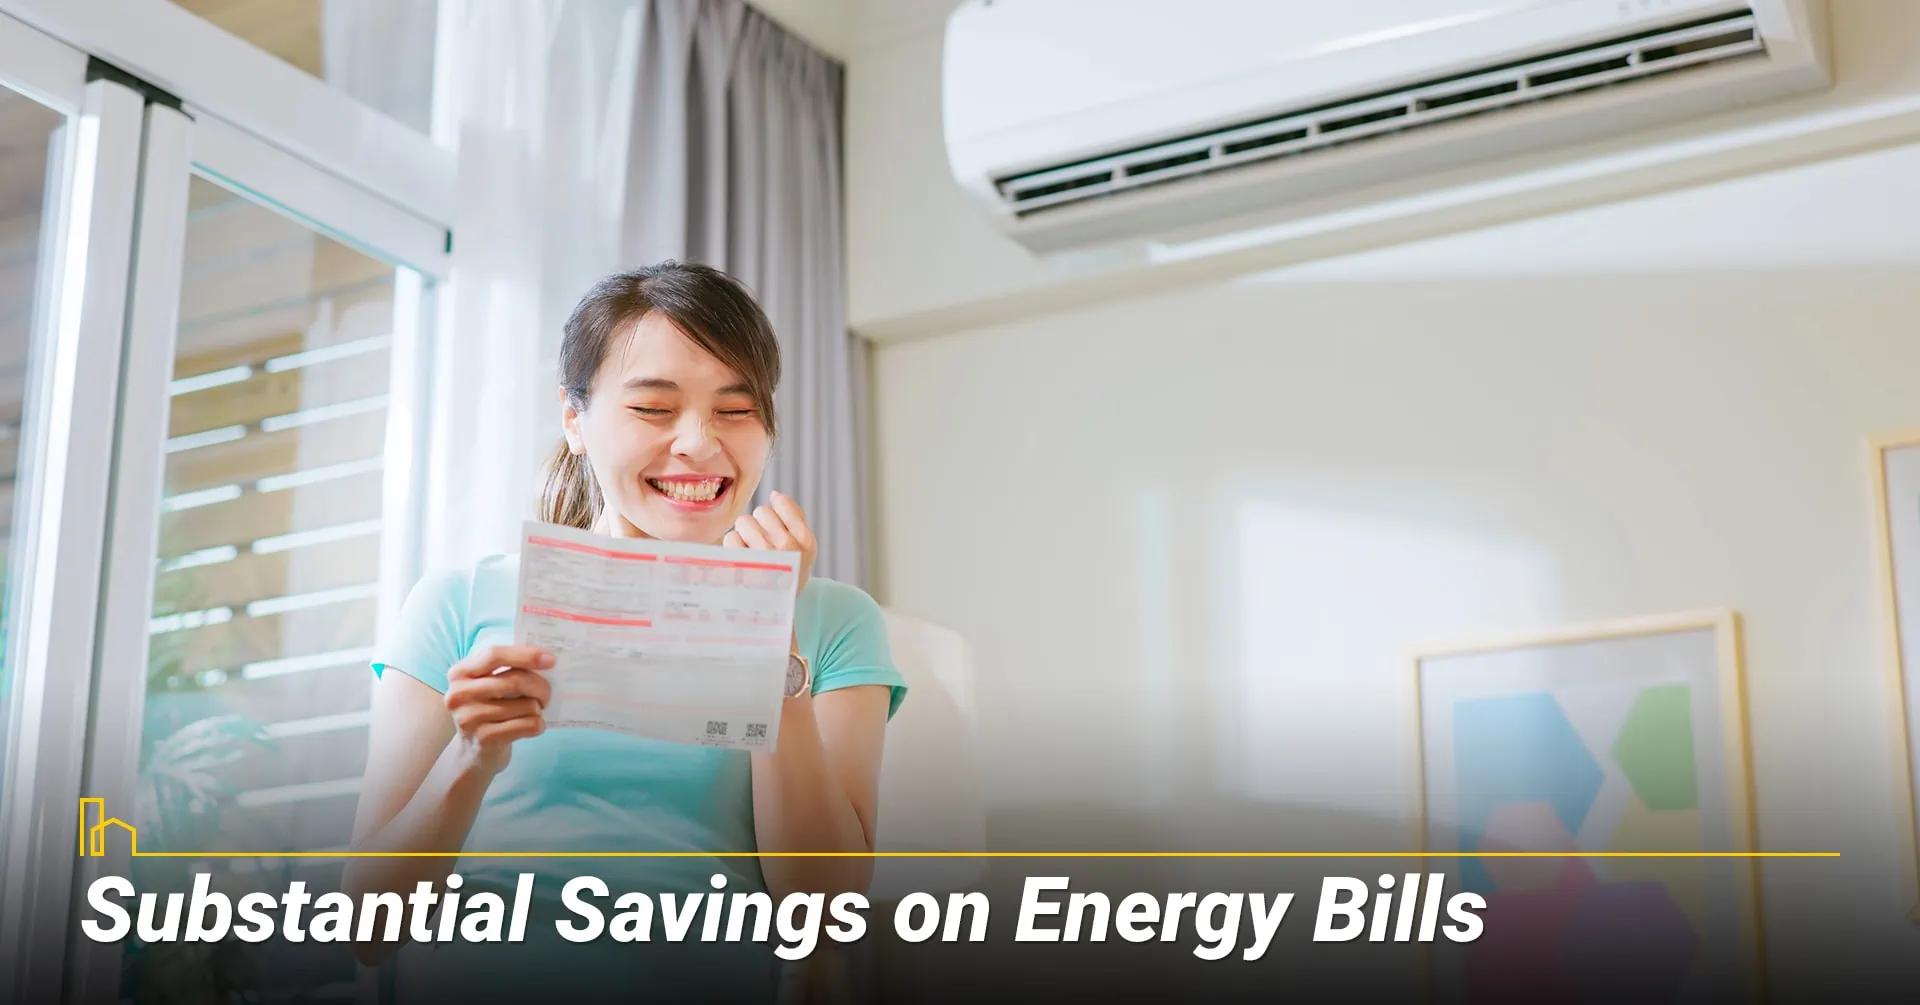 1. Substantial Savings on Energy Bills